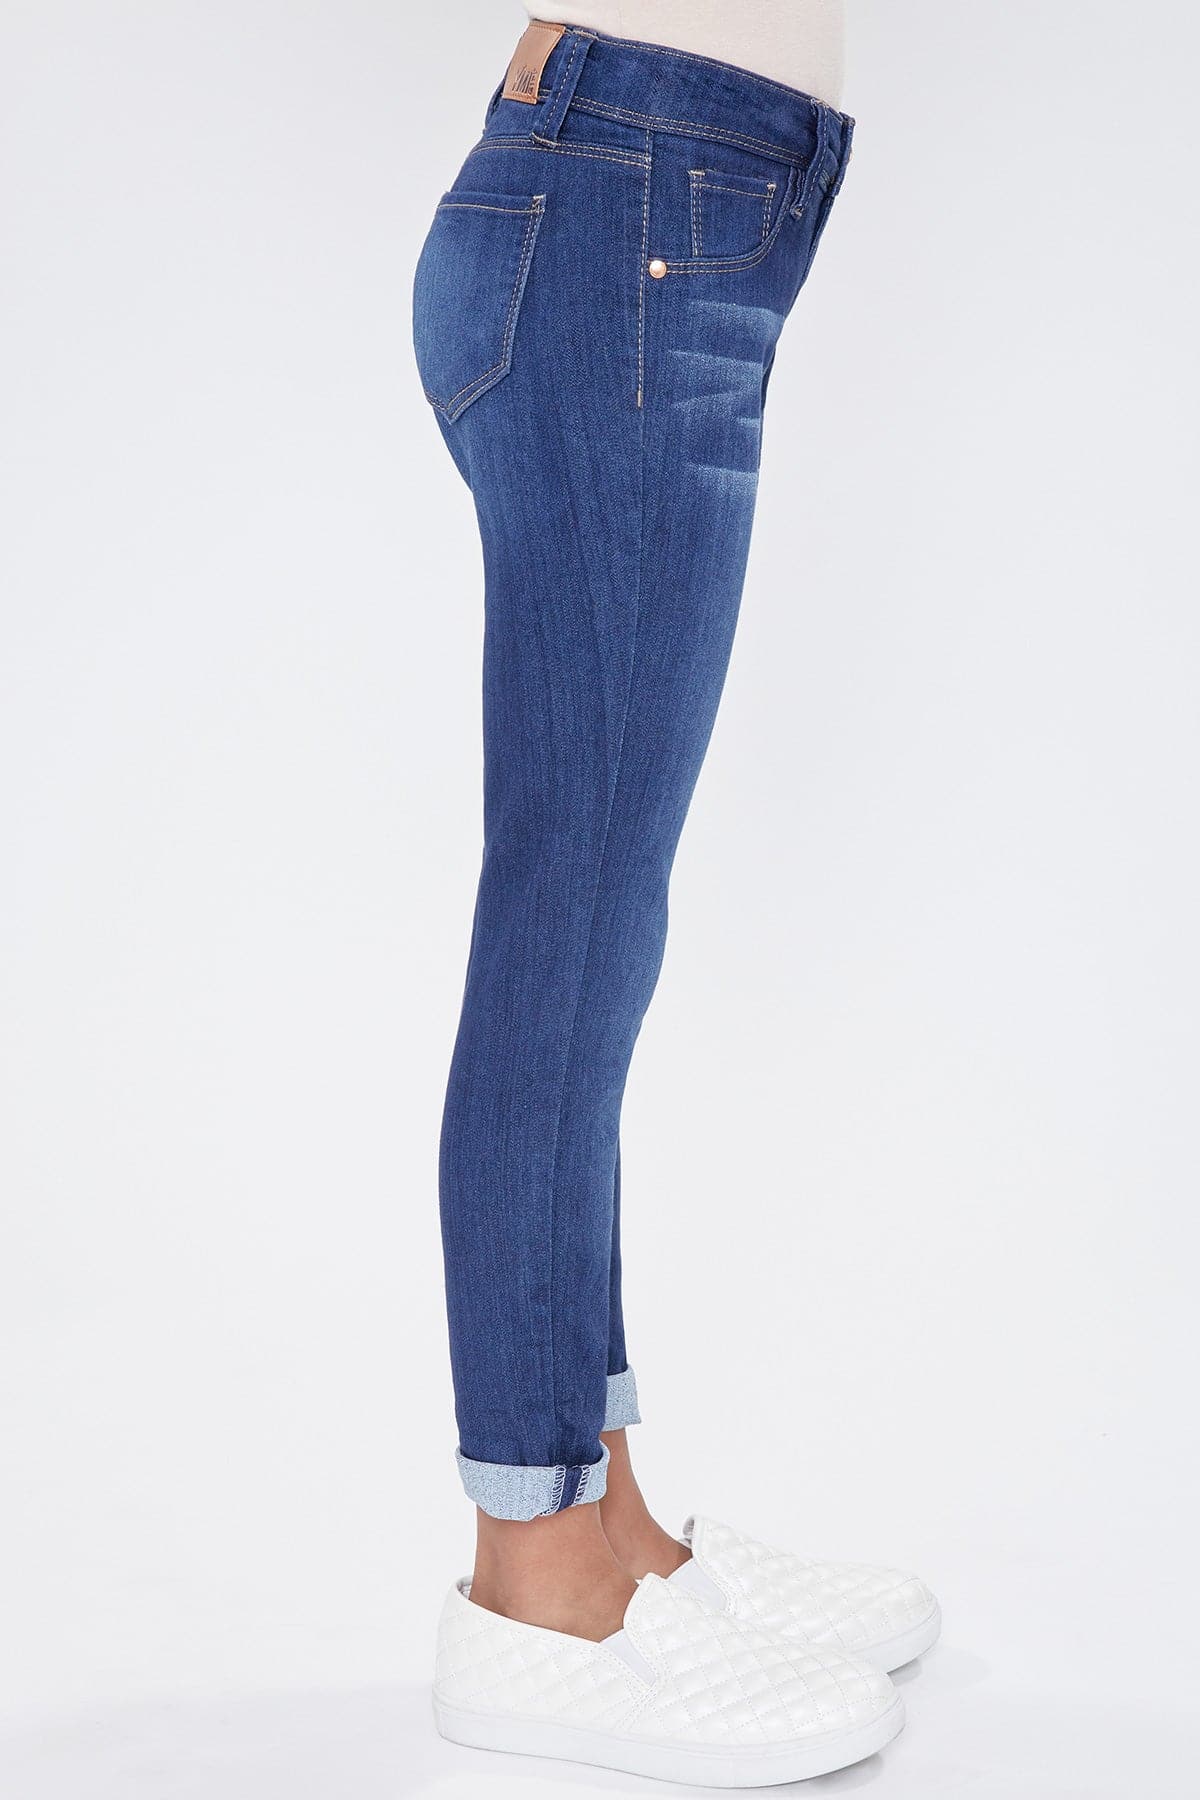 Skinny Denim Optional YMI from JEANS Jeans Girls Cuff YMI –